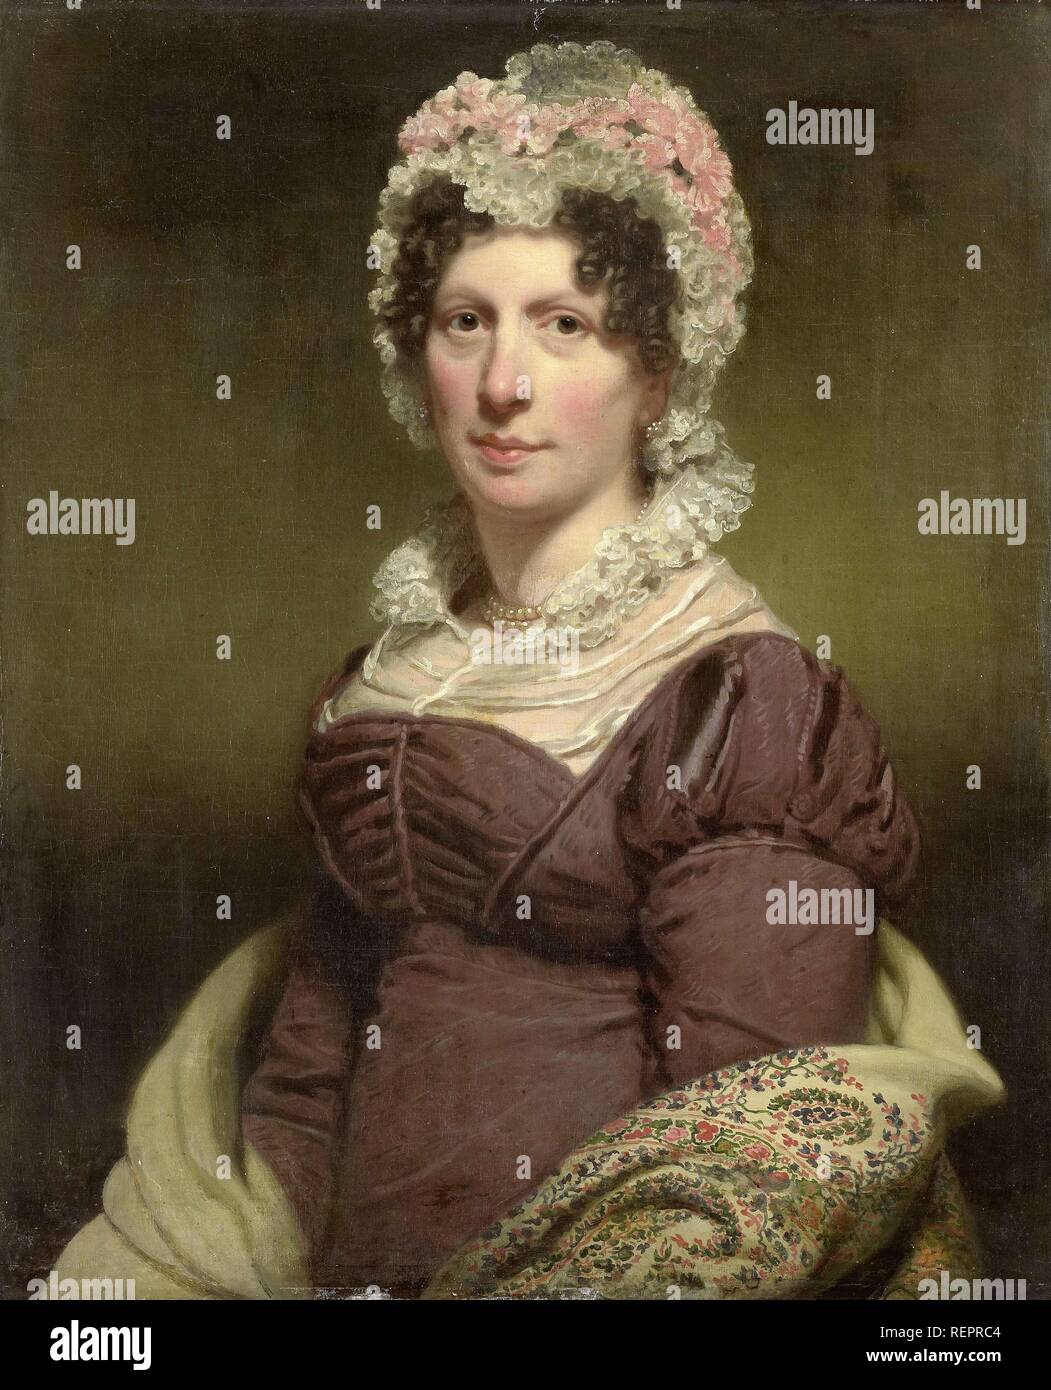 Portrait of a Woman. Dating: c. 1790 - c. 1820. Measurements: h 73 cm × w 60 cm; d 10.4 cm. Museum: Rijksmuseum, Amsterdam. Author: CHARLES HOWARD HODGES. Stock Photo